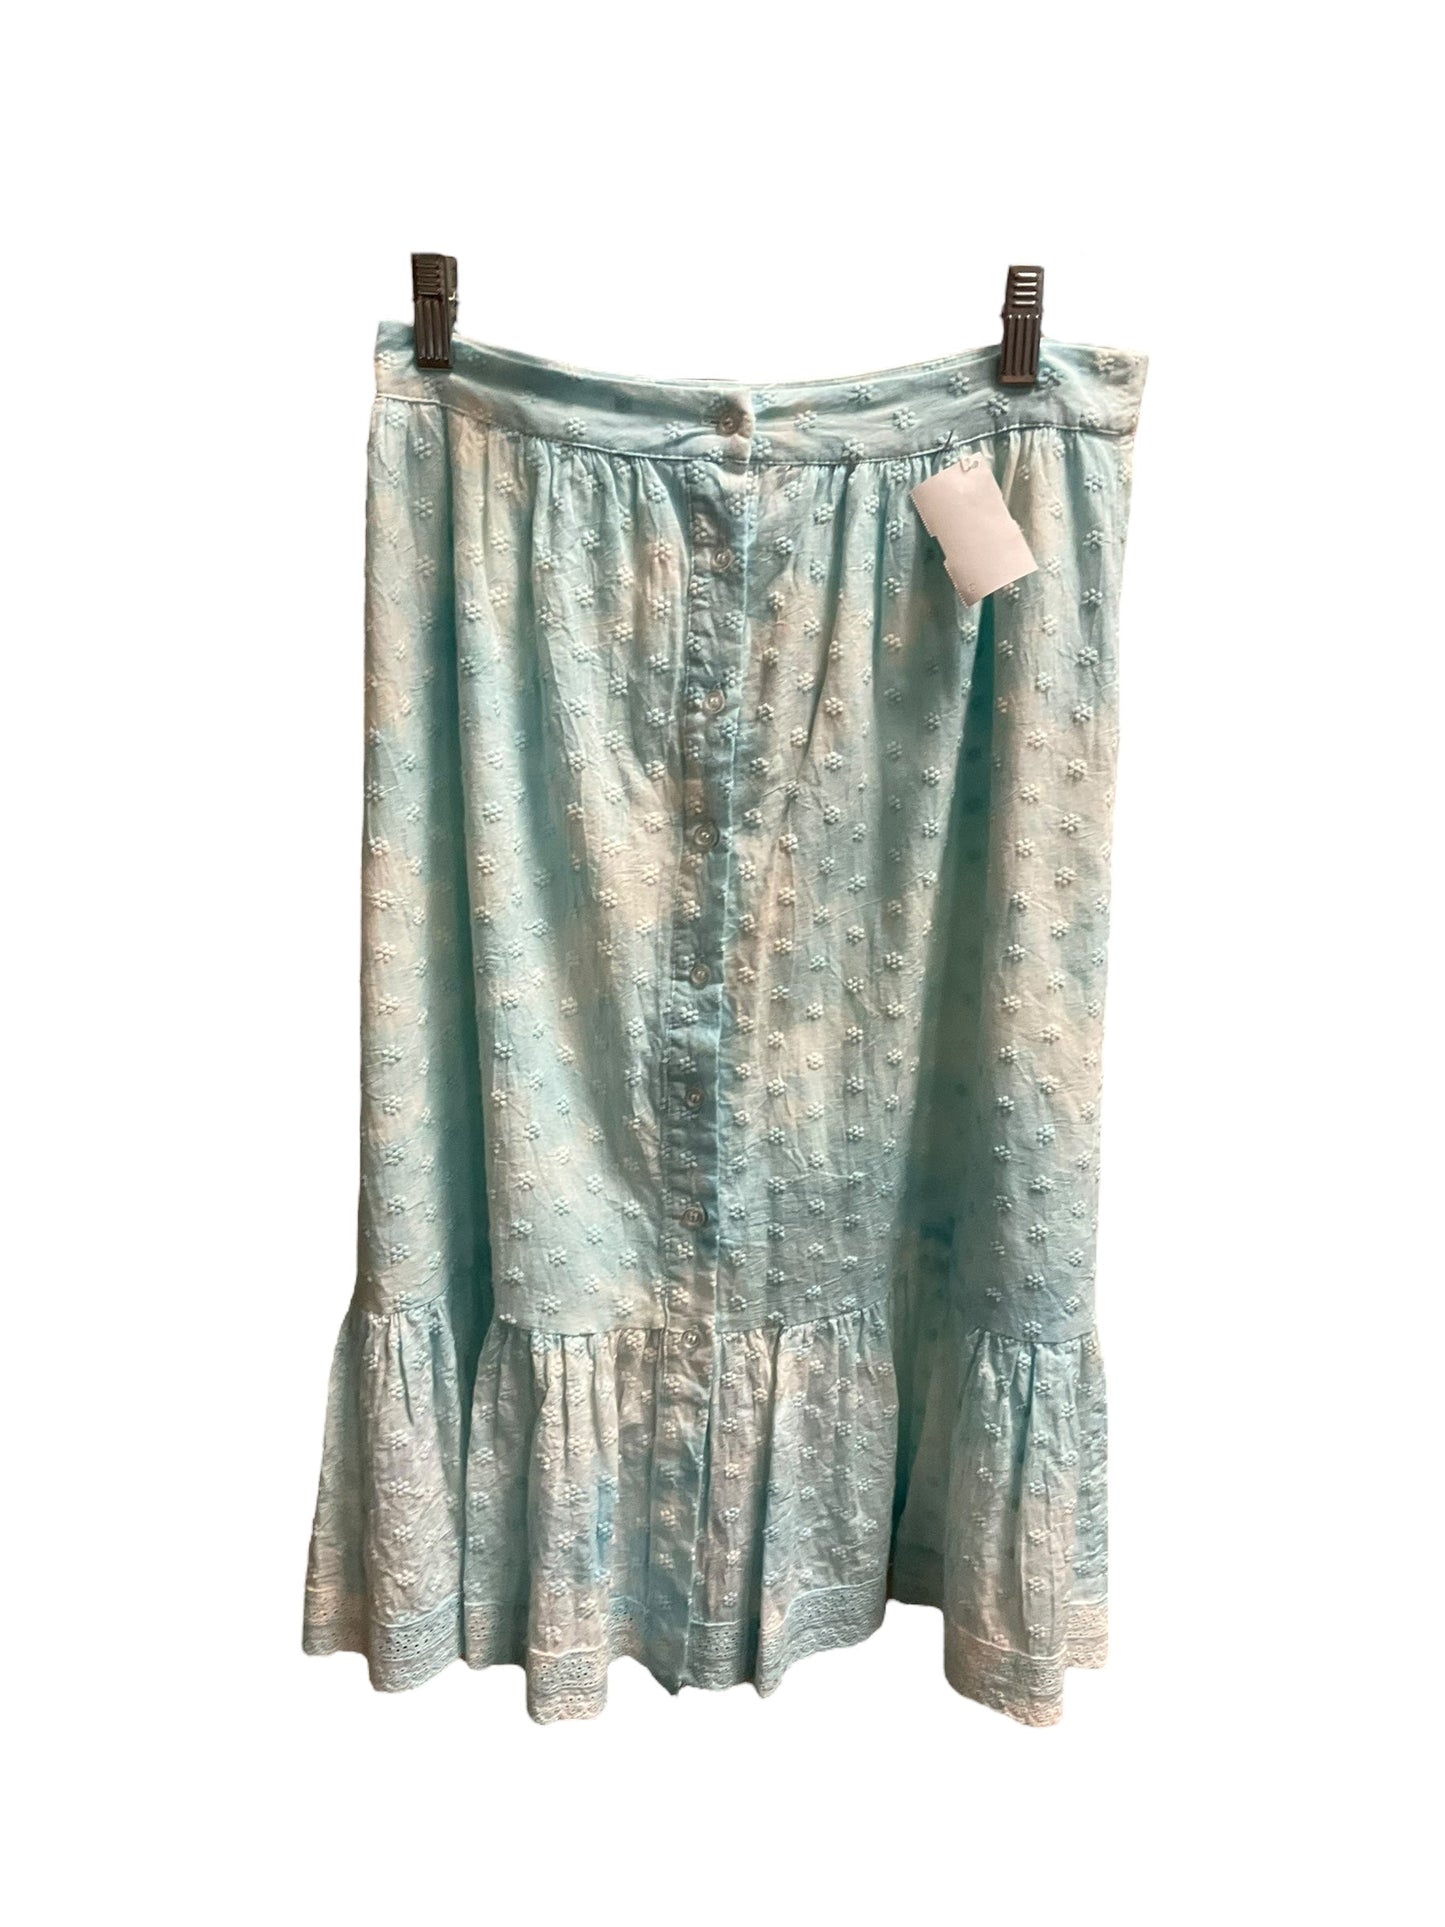 Aqua Skirt Midi Design 365, Size Xs